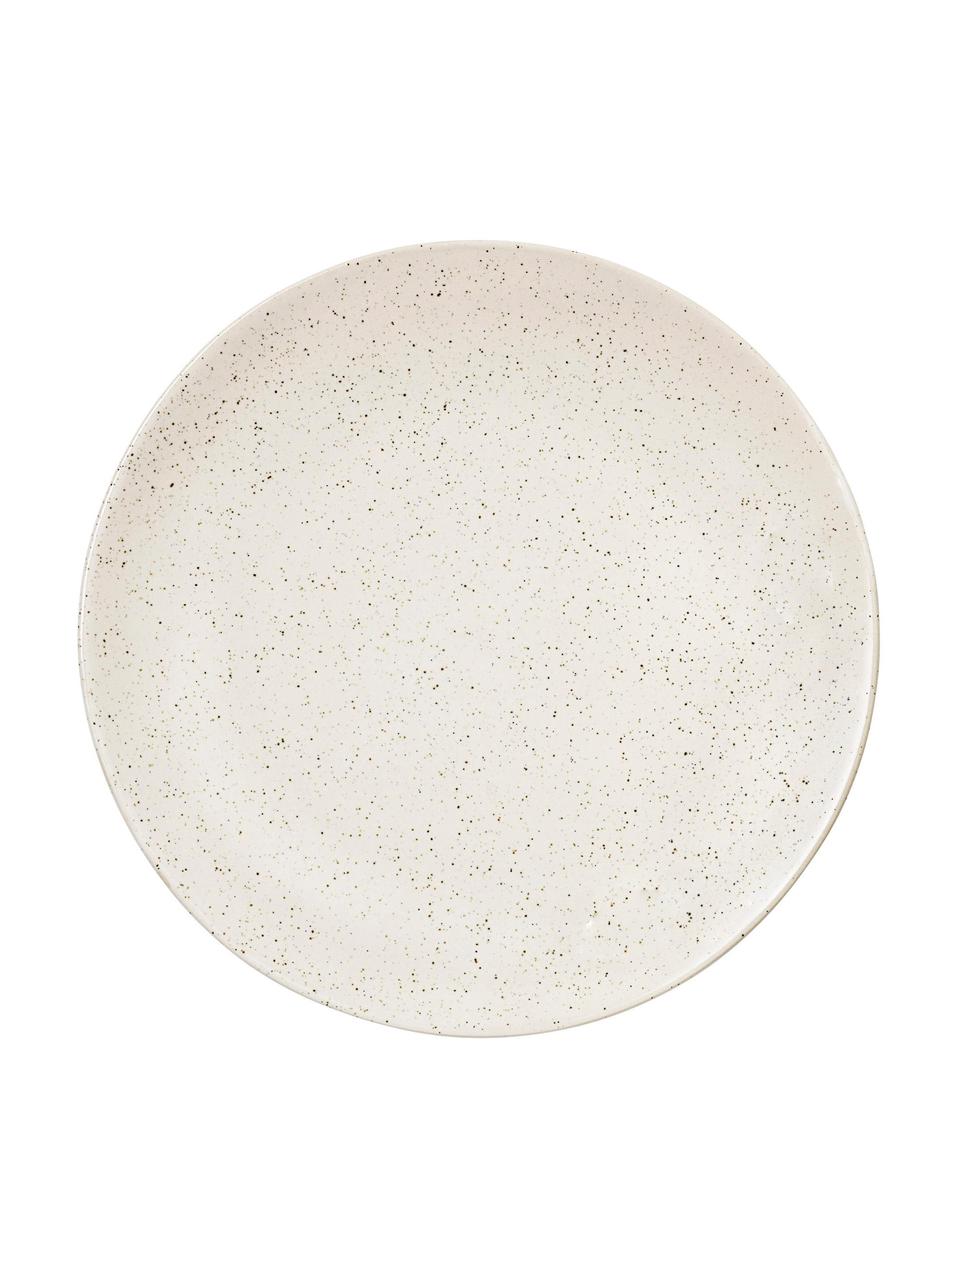 Assiette plate rustique faite main Nordic Vanilla, 4 pièces, Grès cérame, Blanc crème, moucheté, Ø 26 cm